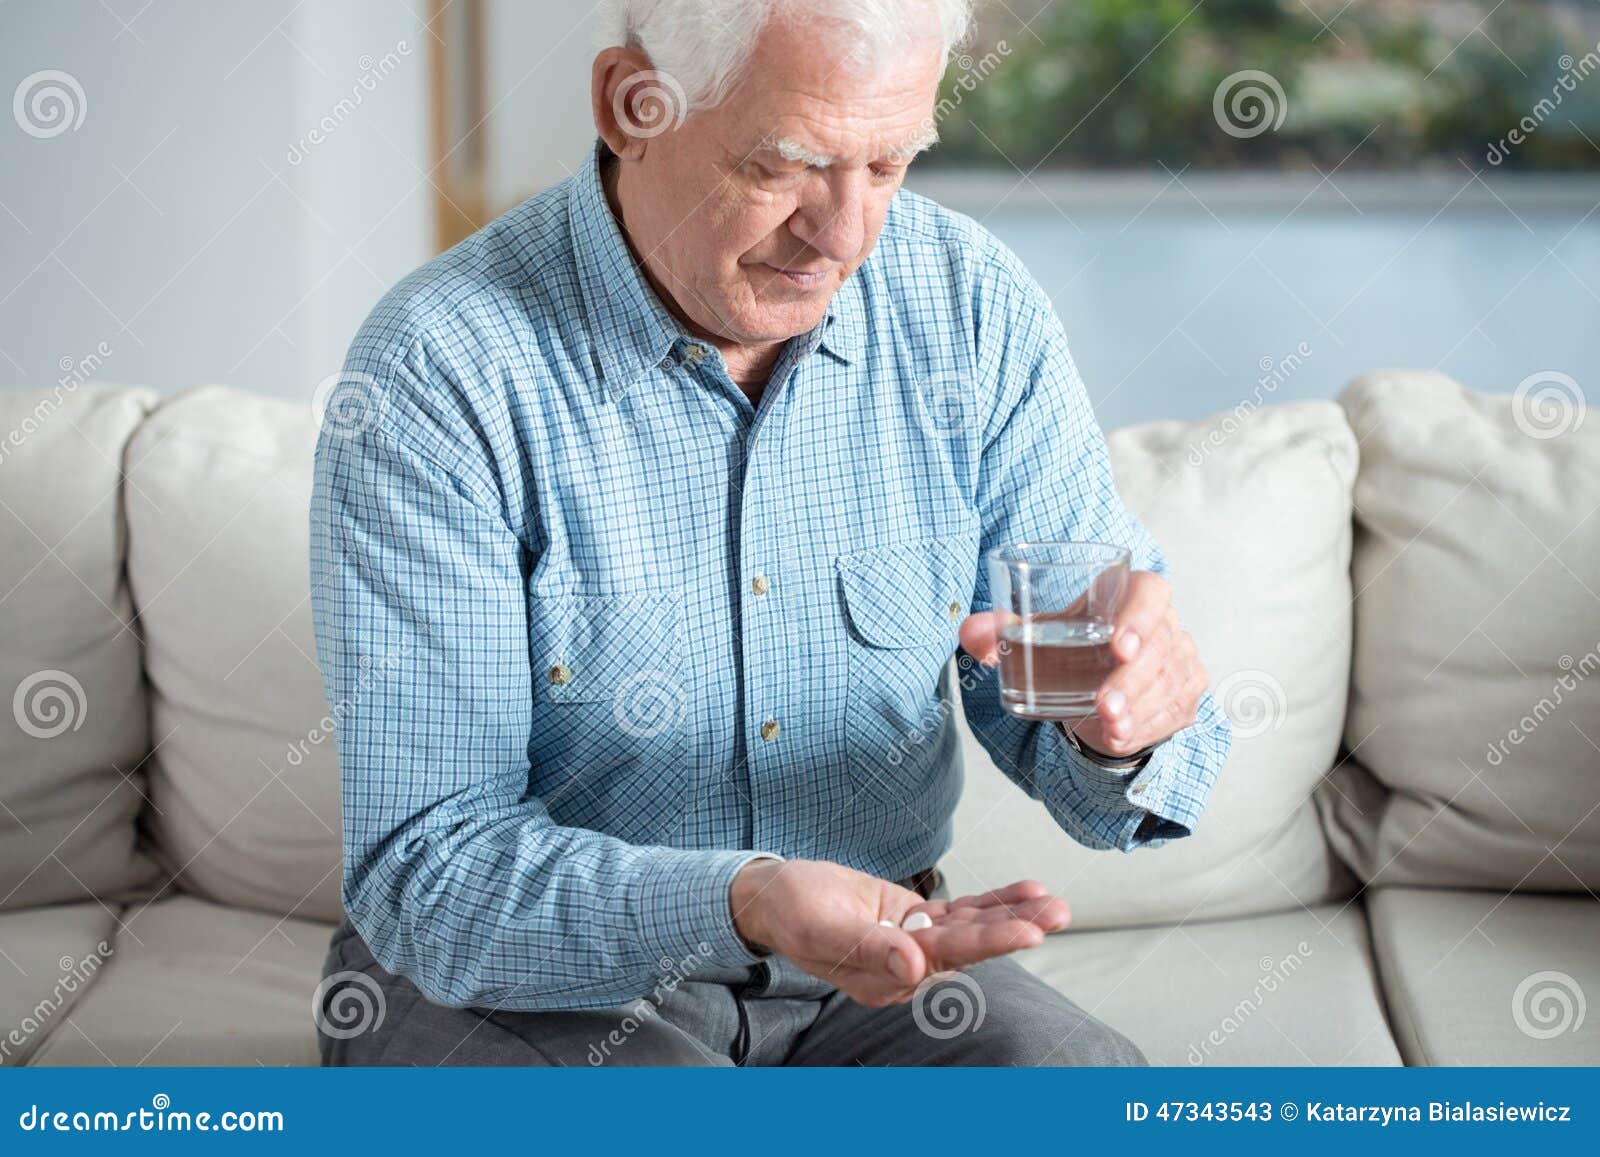 ill senior man taking pill